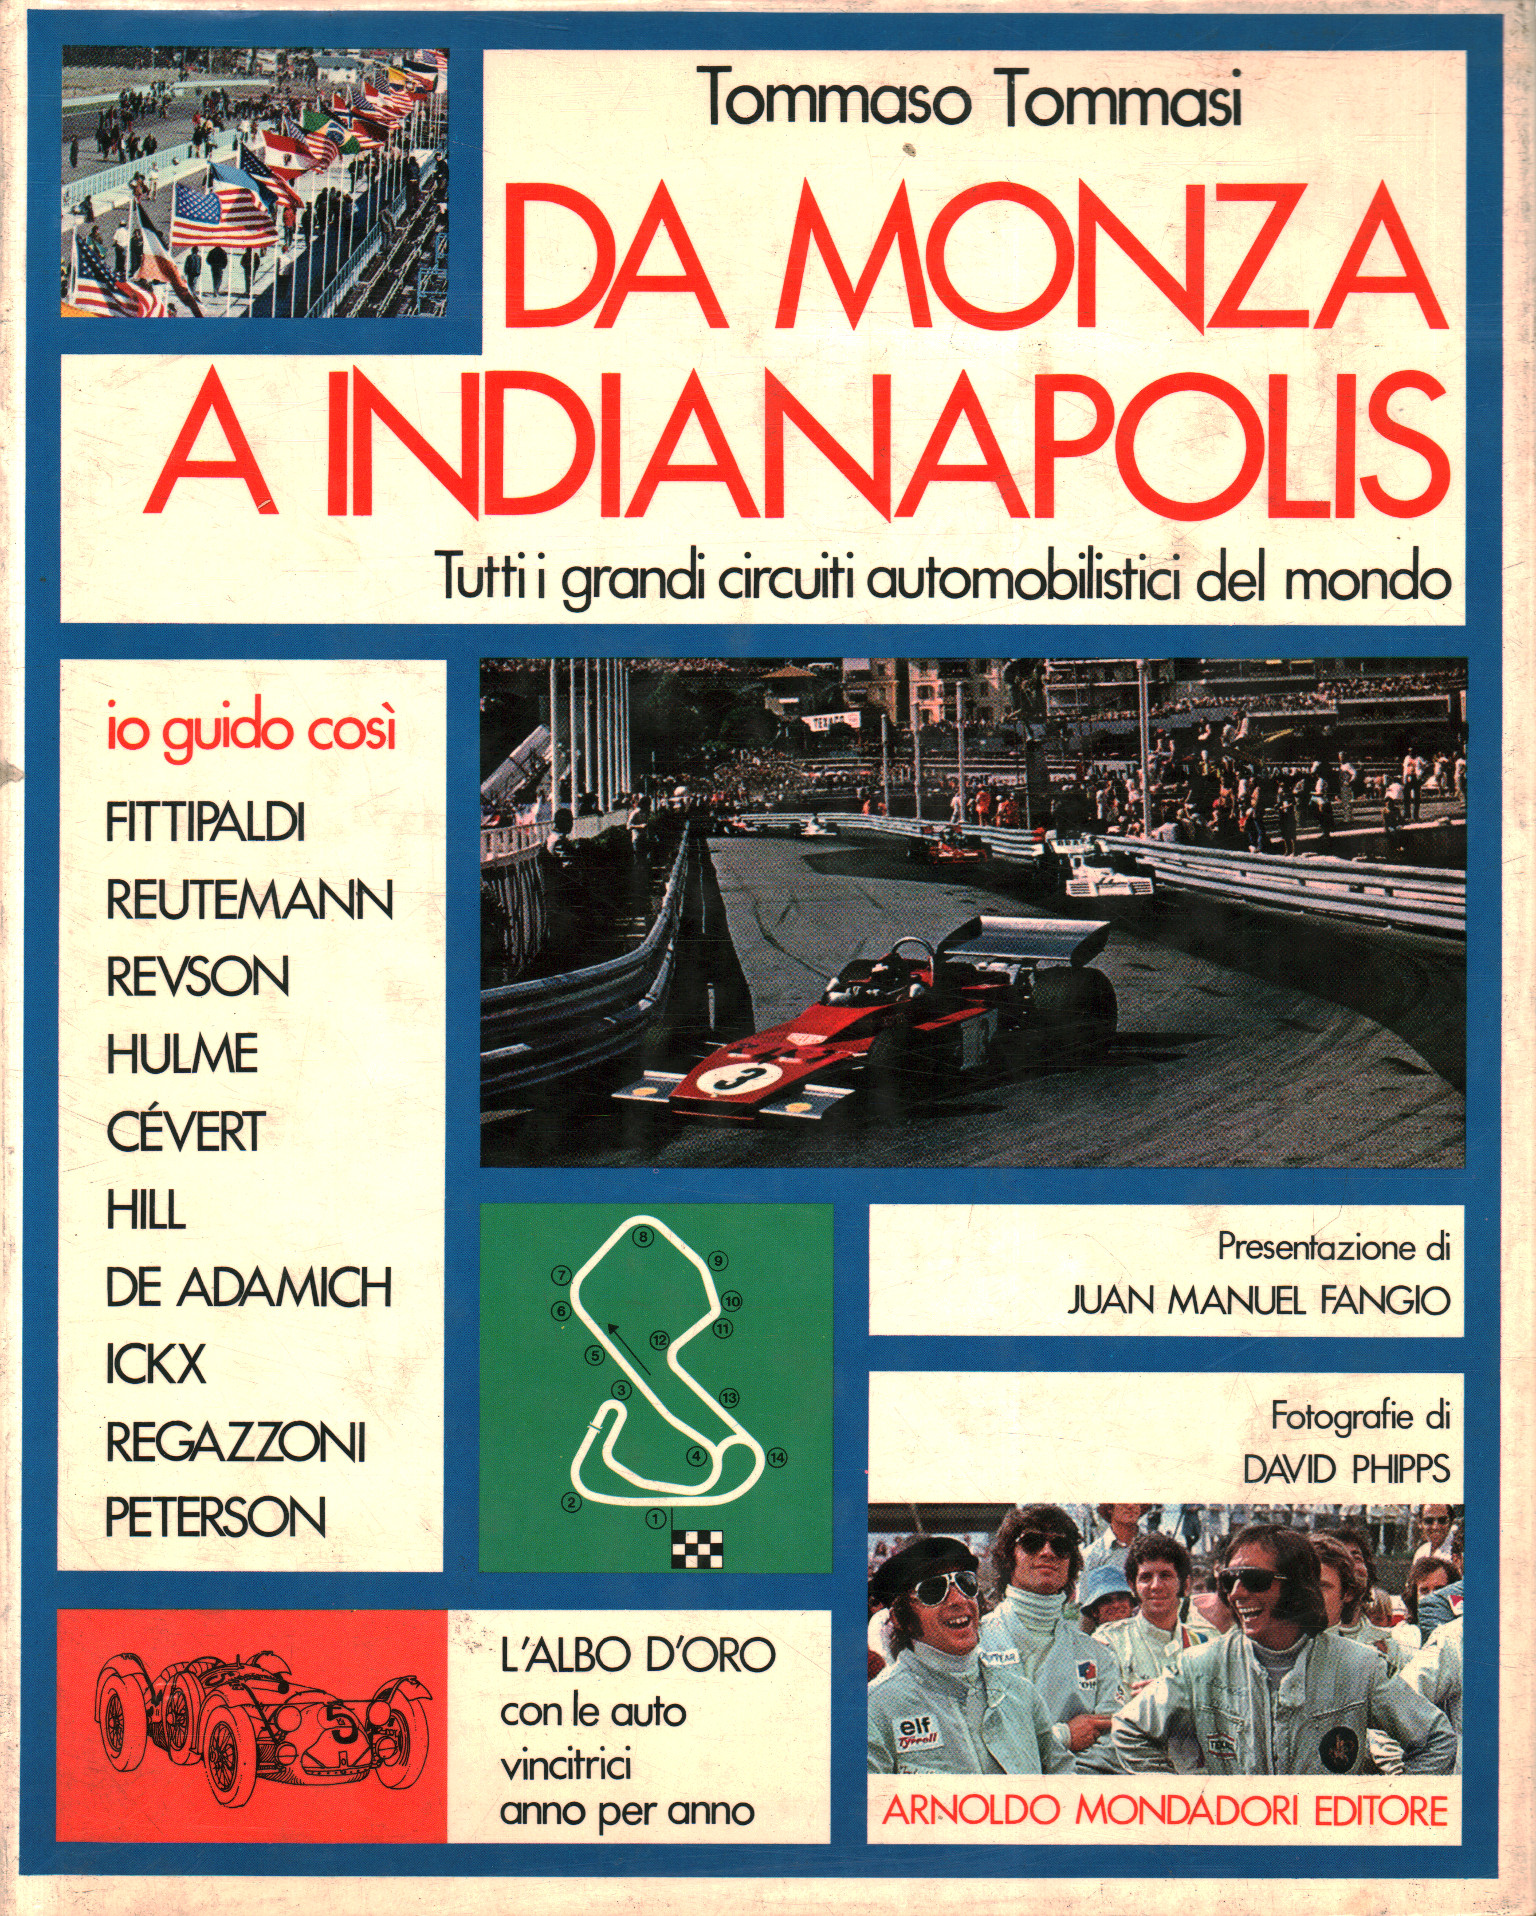 De Monza à Indianapolis